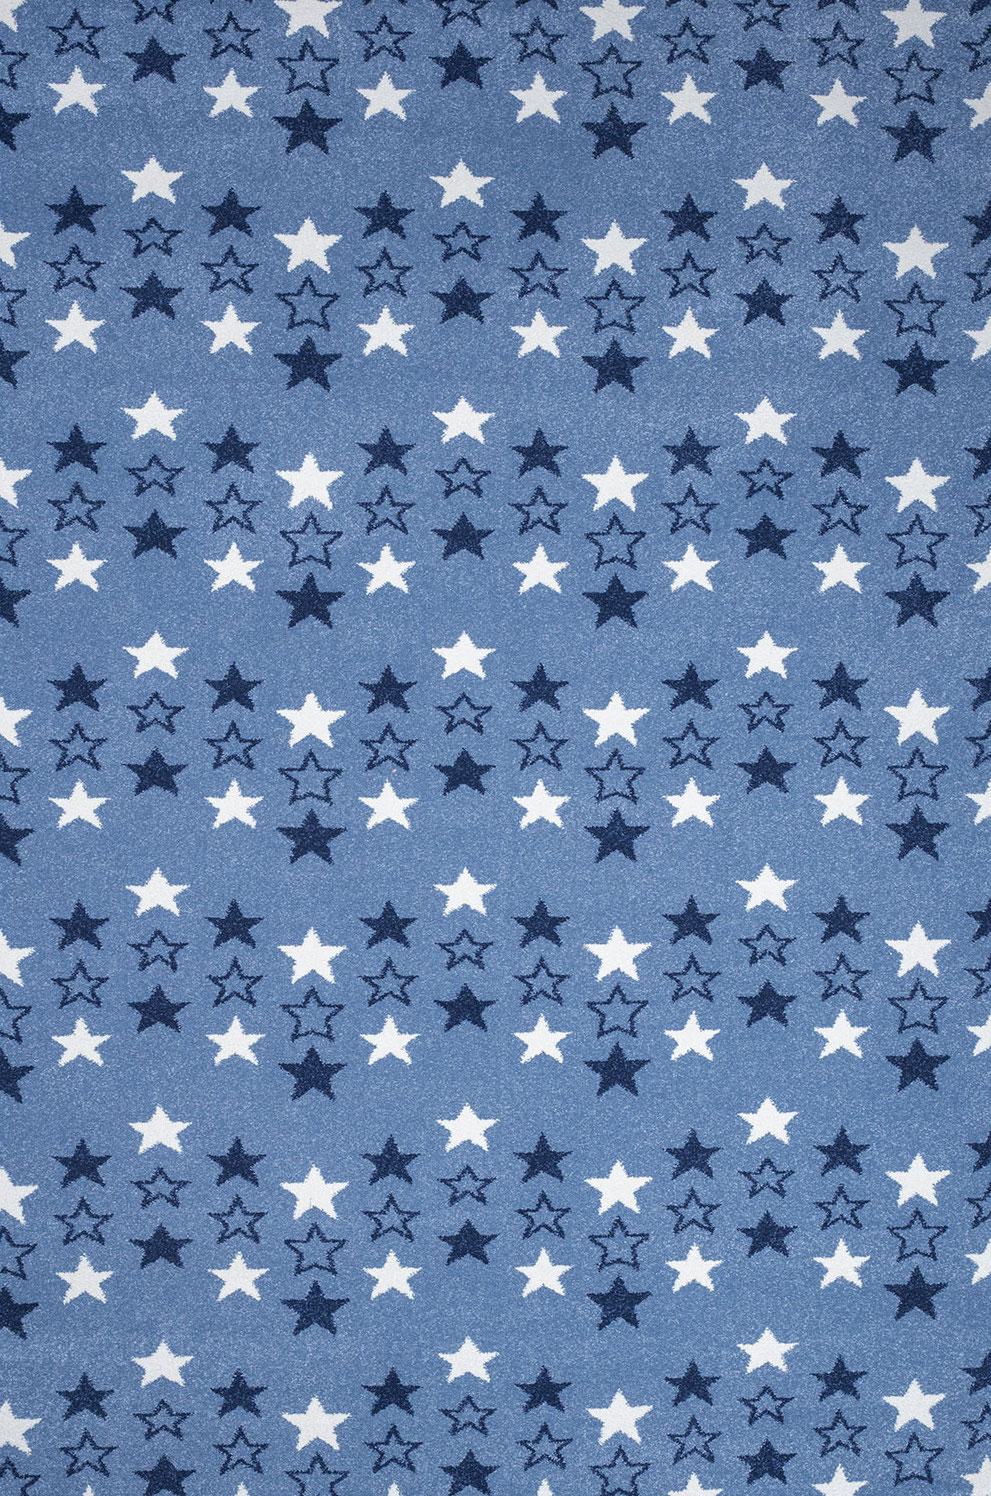 Παιδικό χαλί Diamond kids 8469/330 ραφ μπλε αστεράκια - ΣΕΤ (0,70x1,50)x2 0,70x2,20 Colore Colori